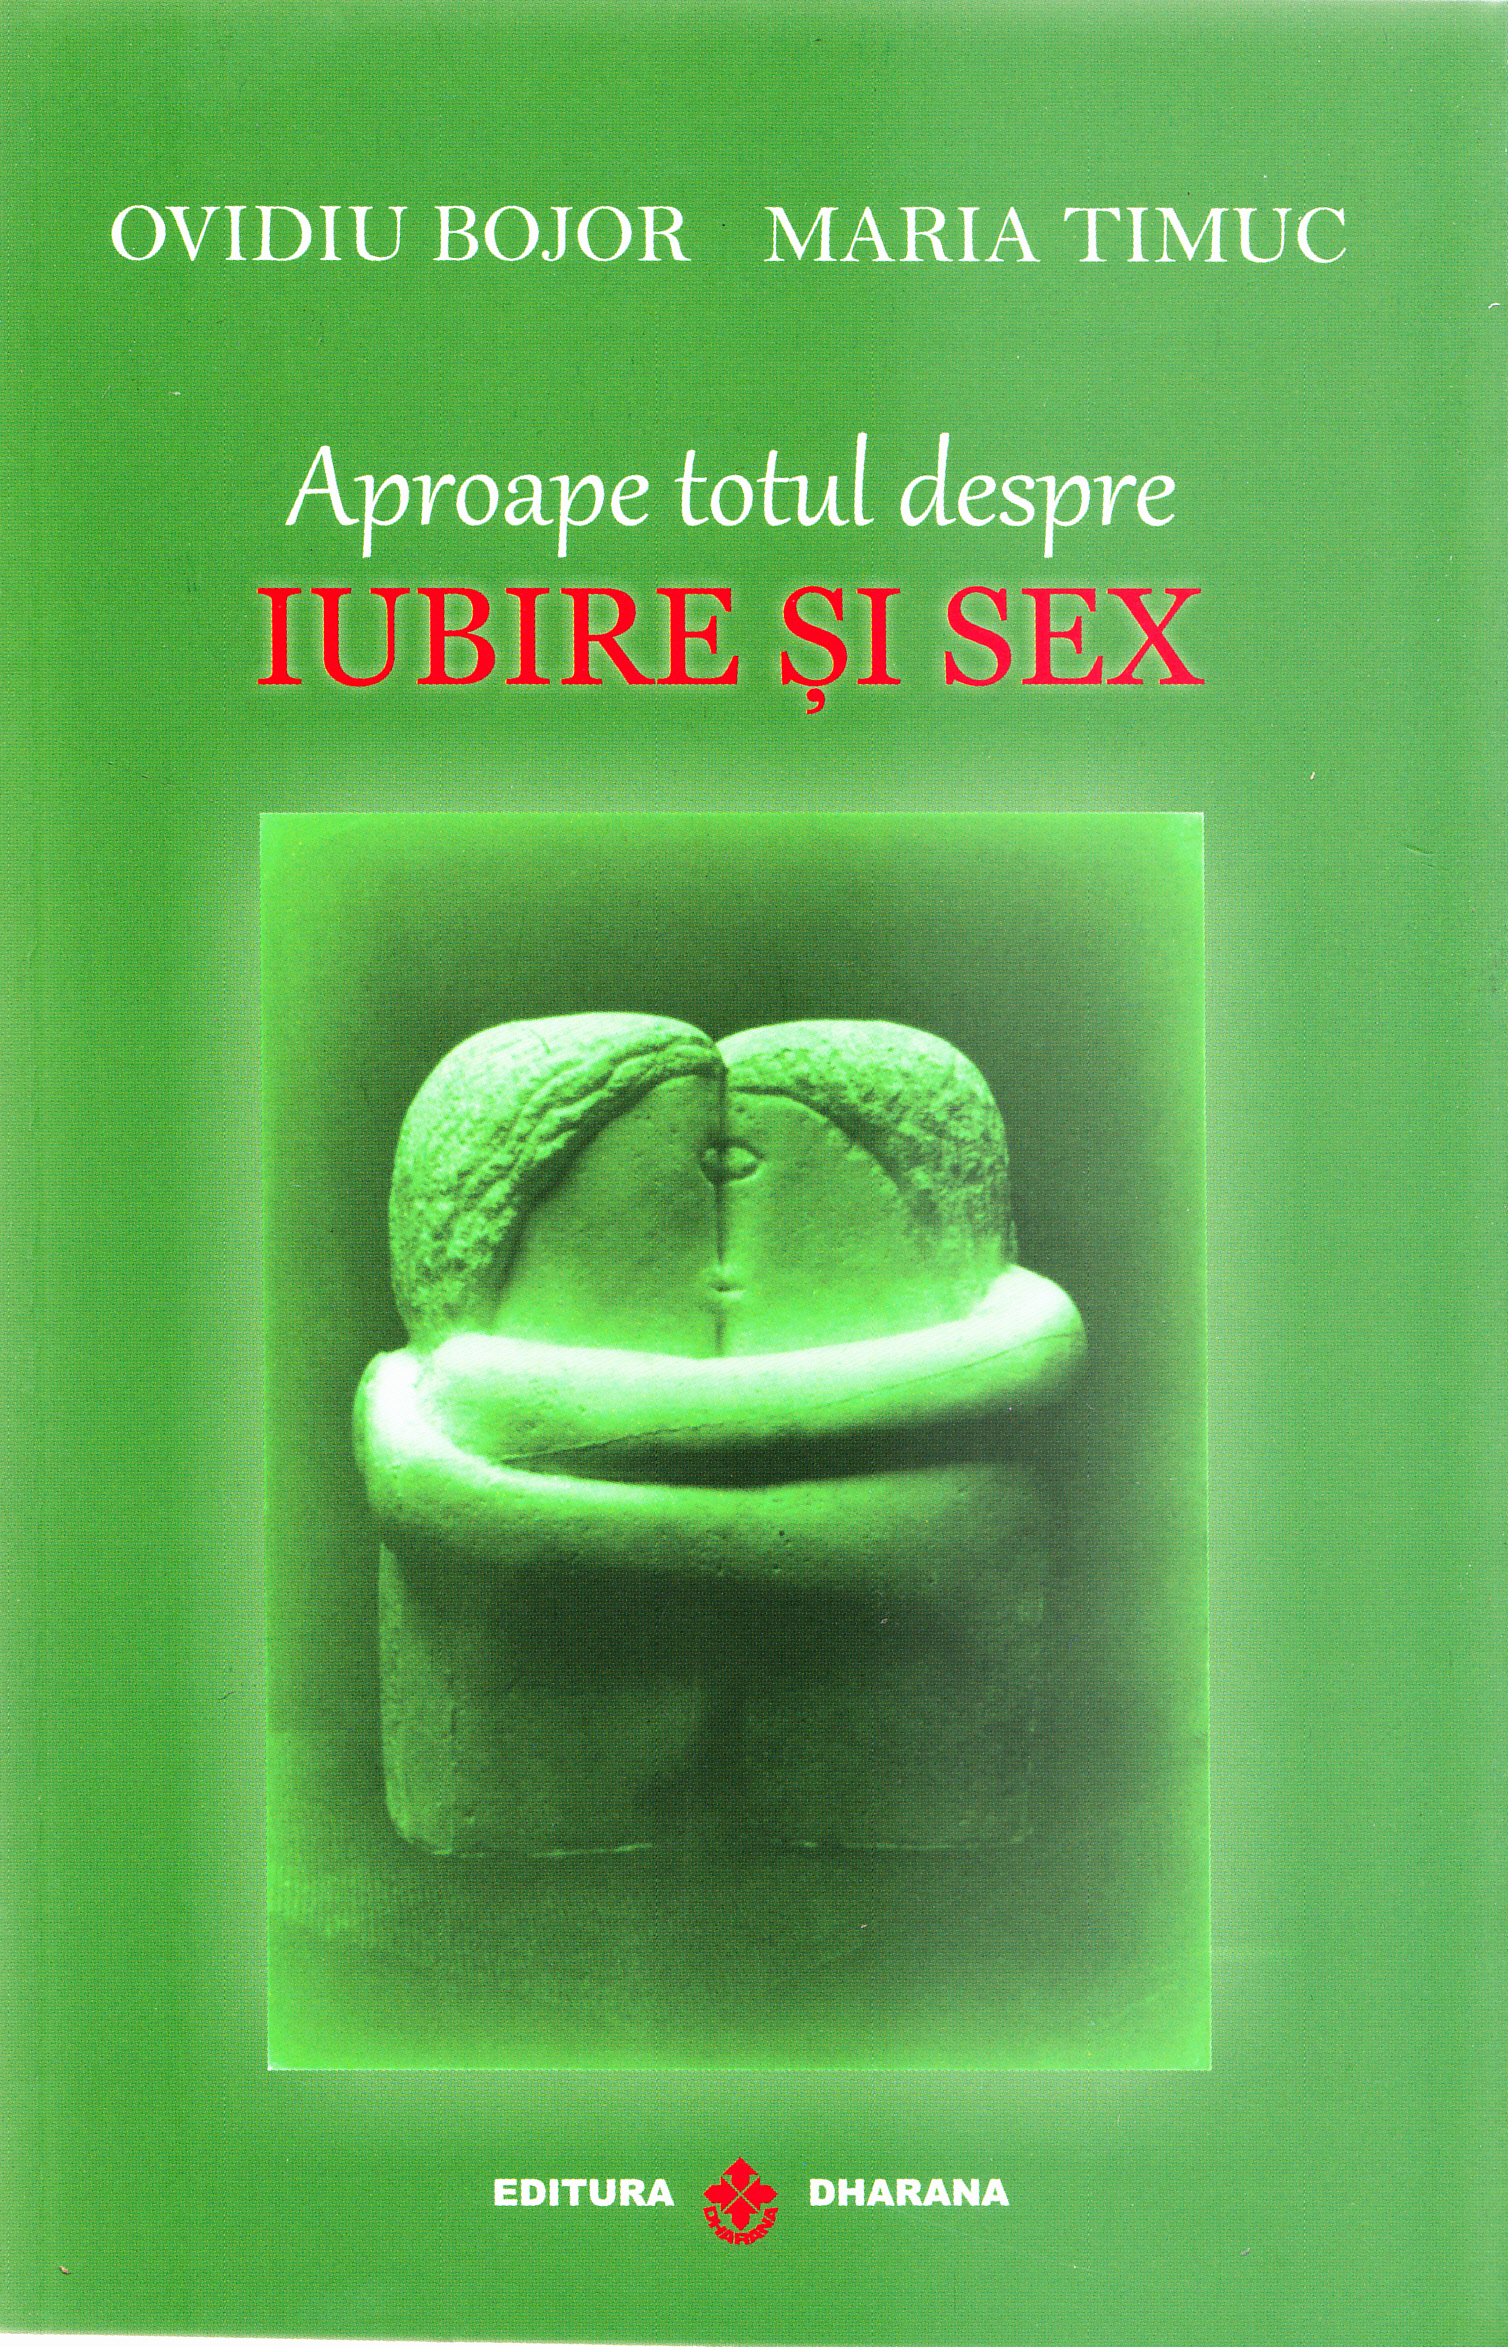 Aproape totul despre iubire si sex | Ovidiu Bojor, Maria Timuc carturesti.ro Carte